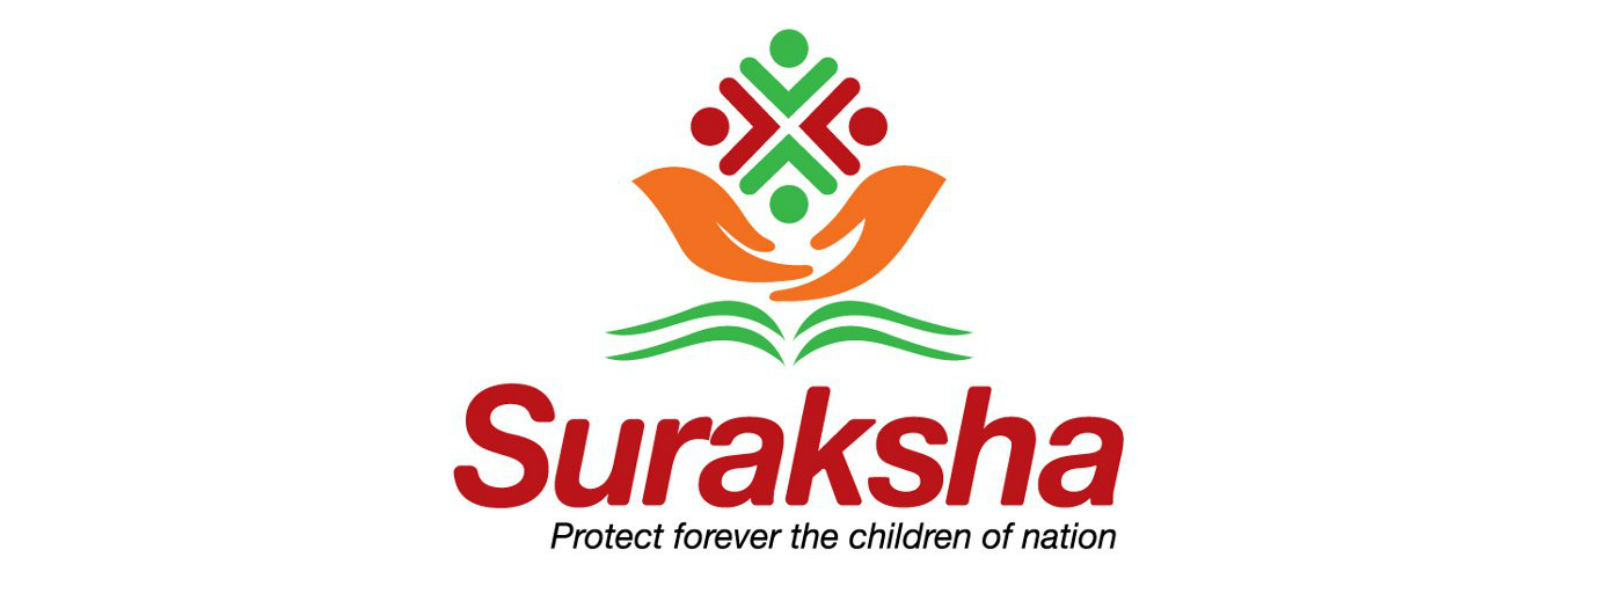 Suraksha Insurance will not be abolished